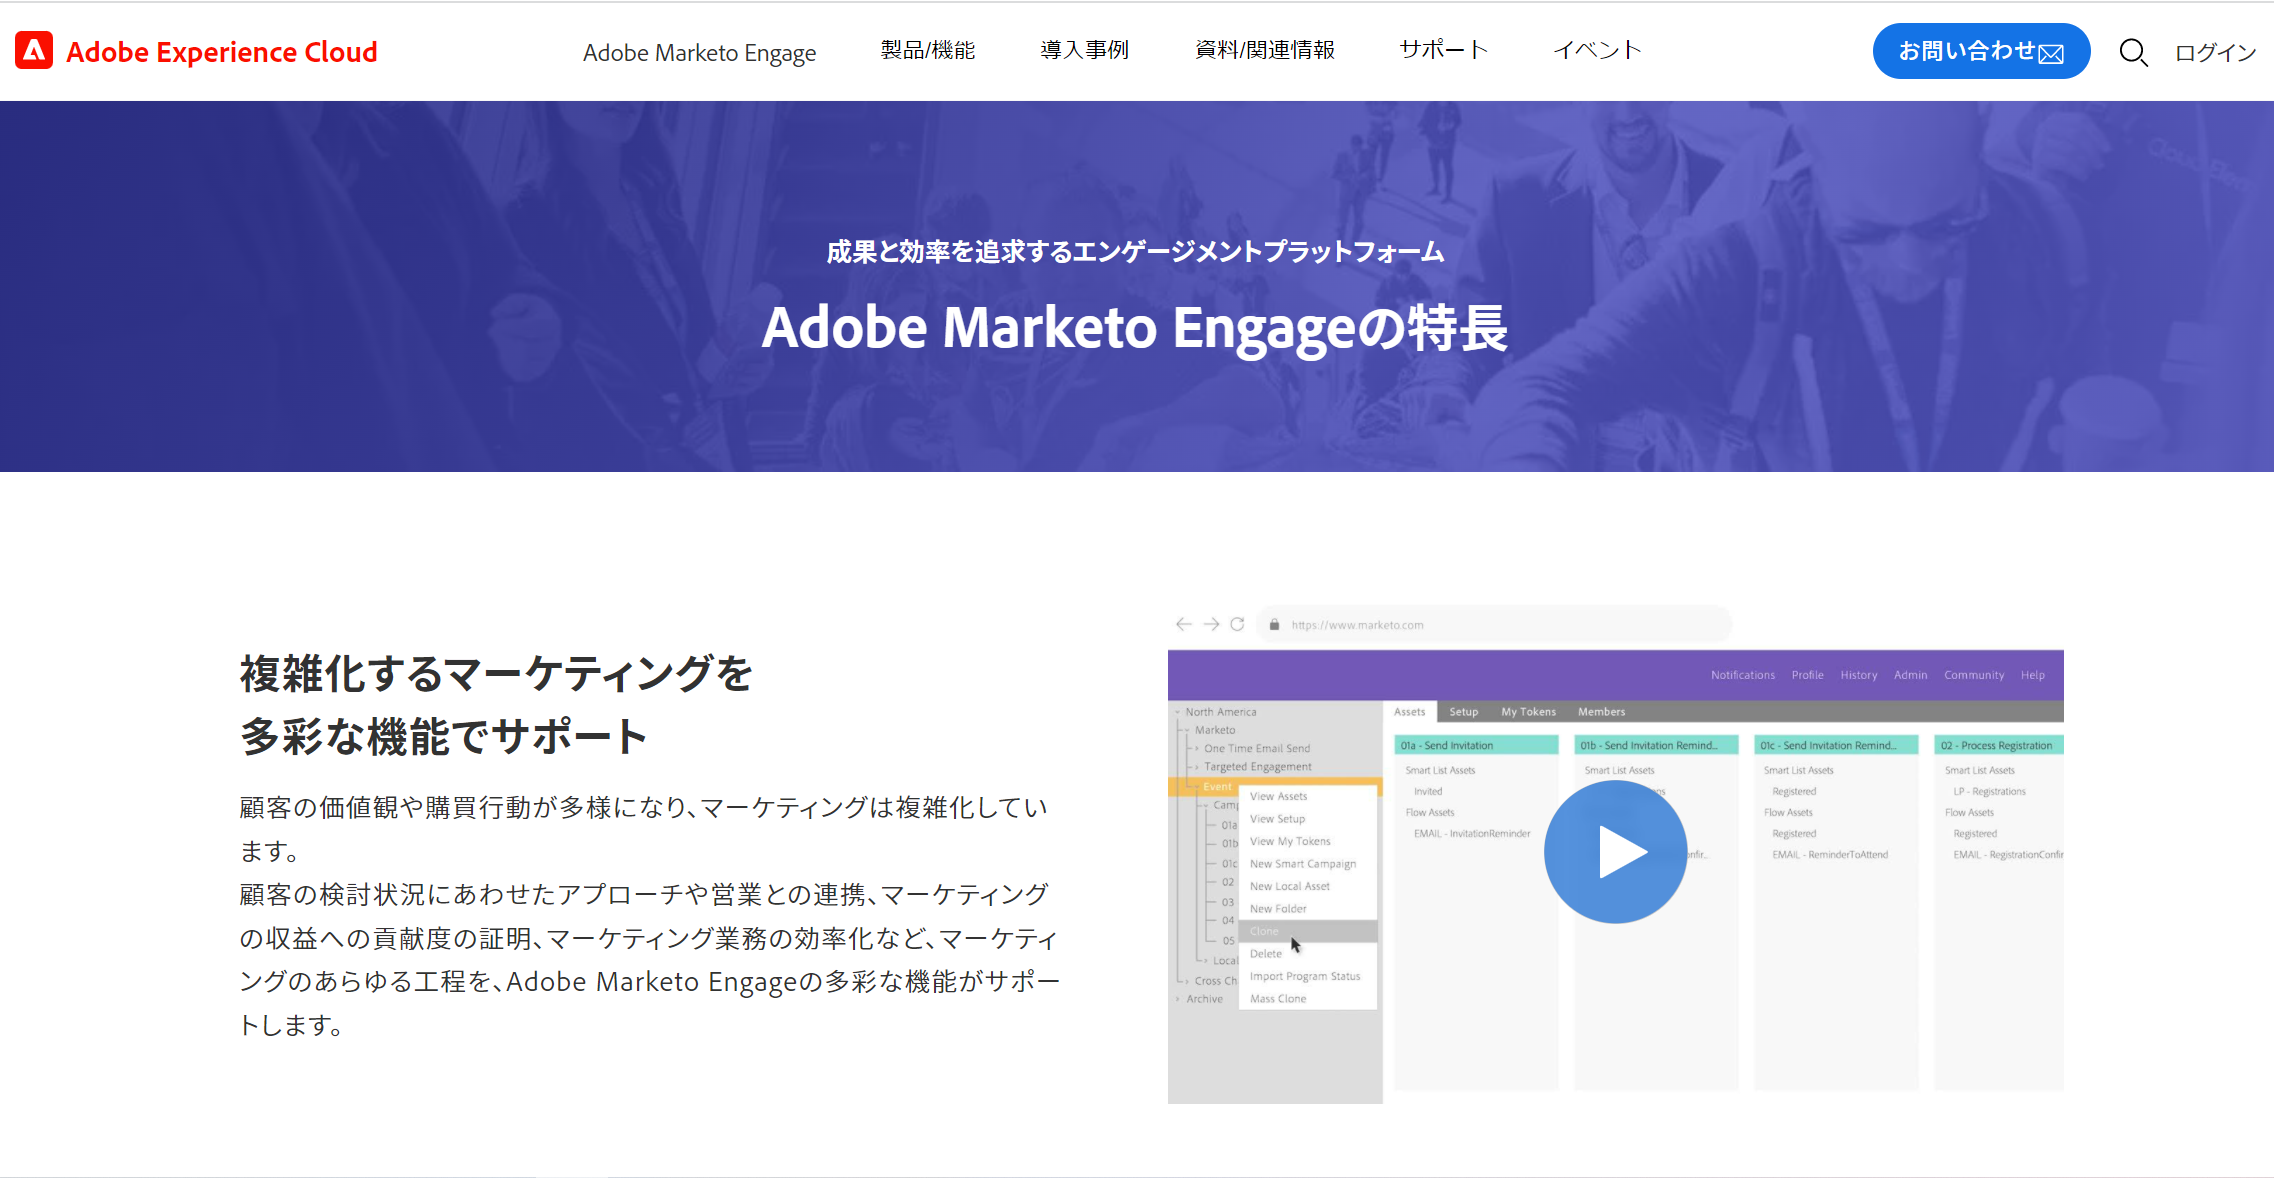 Adobe Marketо Engage